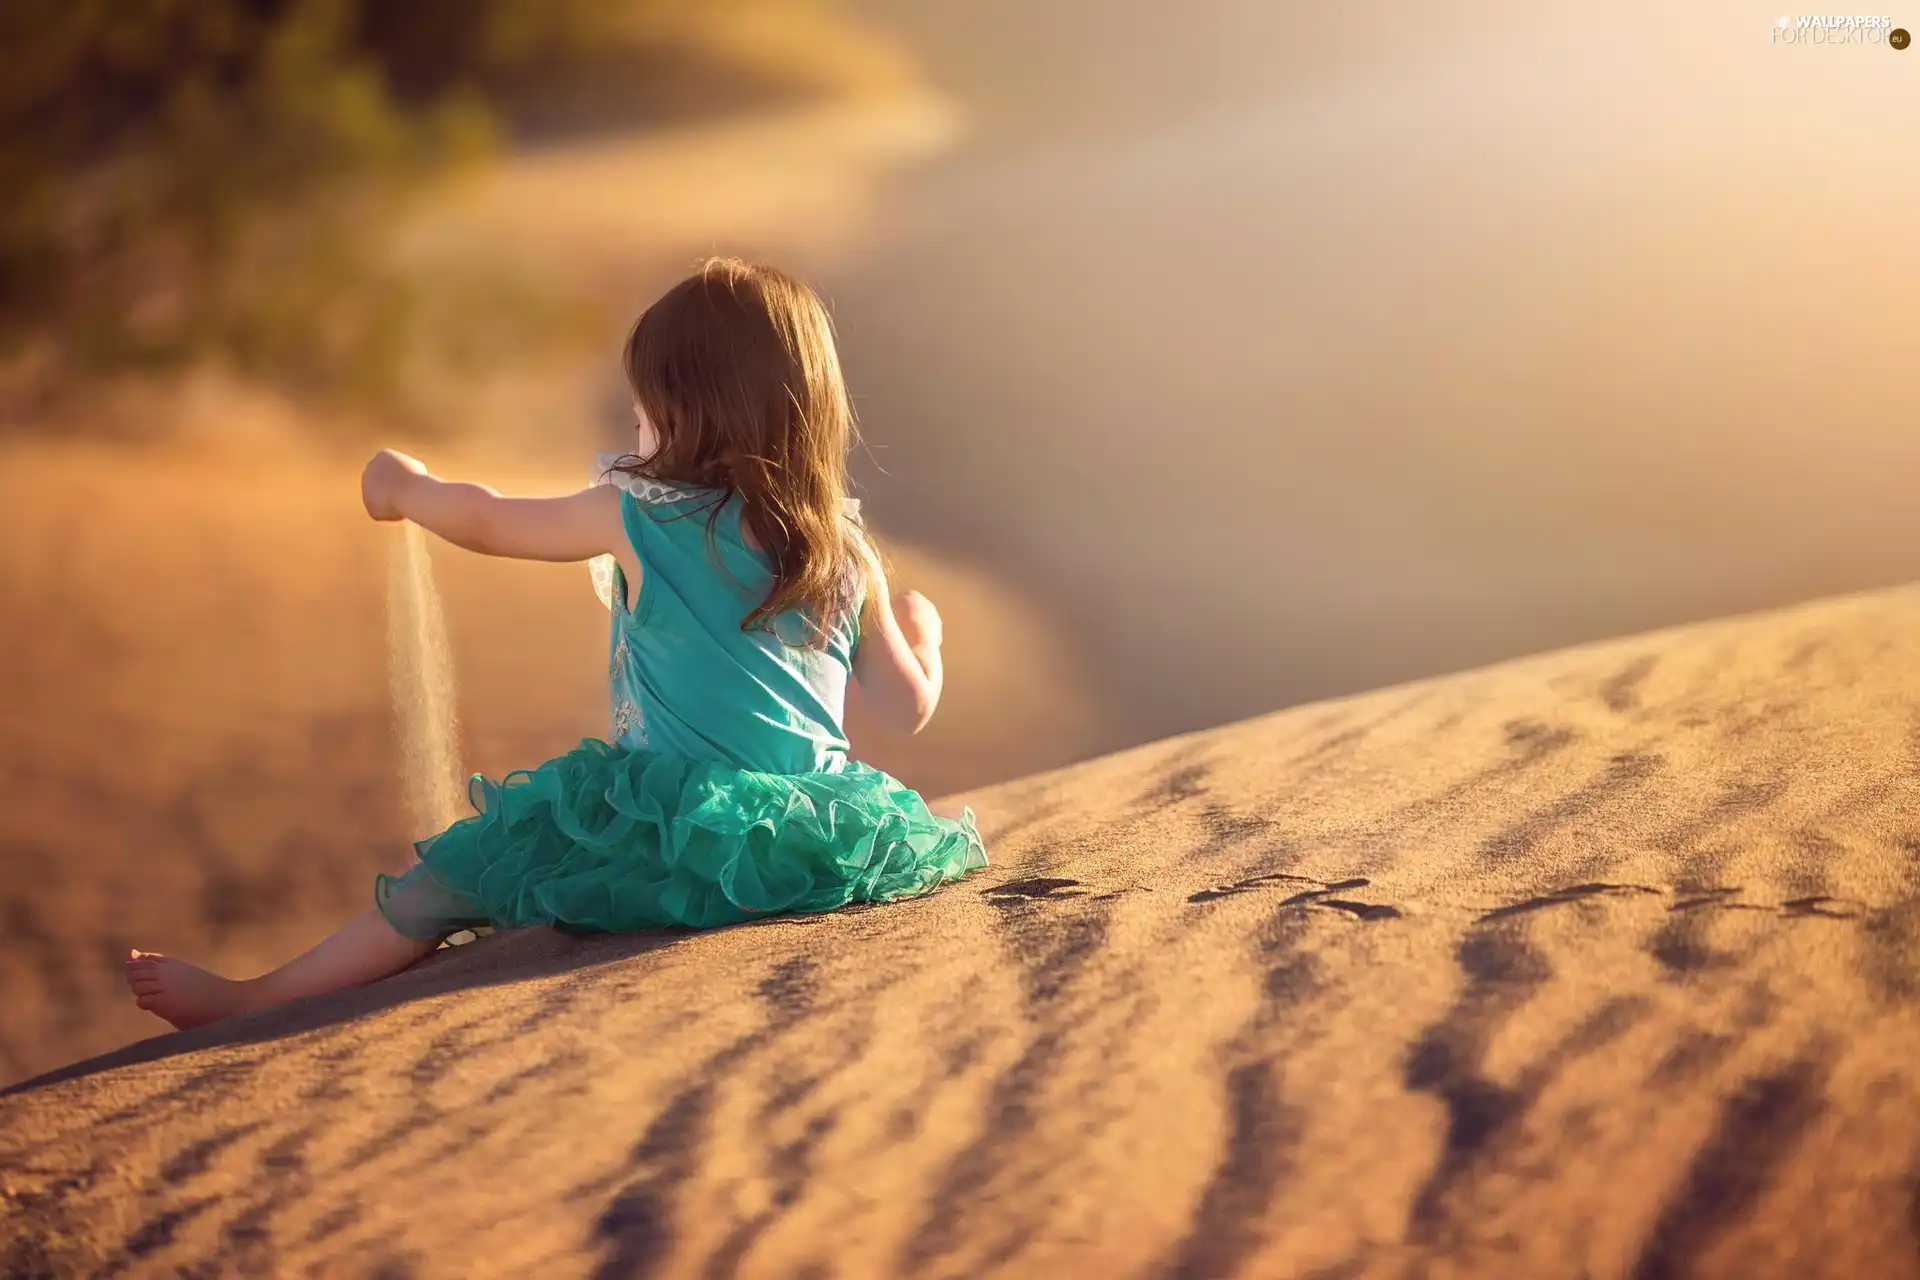 Sand, small, girl